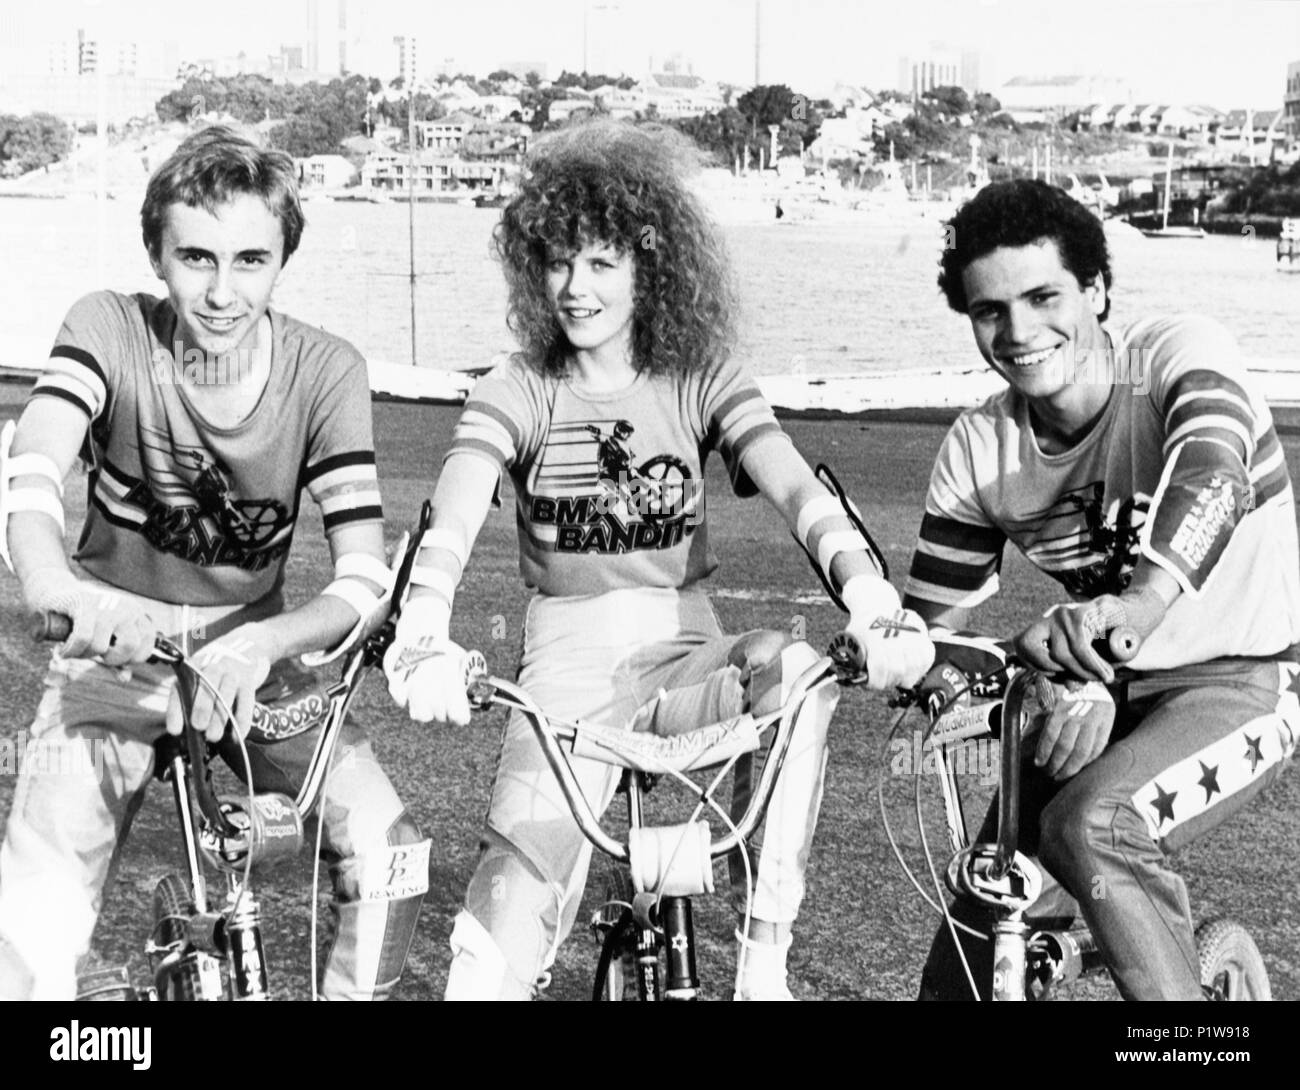 Original Film Titel: BMX-BANDITS. Englischer Titel: BMX-BANDITS. Regisseur:  Brian TRENCHARD-SMITH. Jahr: 1983. Stars: Nicole Kidman. Credit: NILSEN  PREMIERE/Album Stockfotografie - Alamy